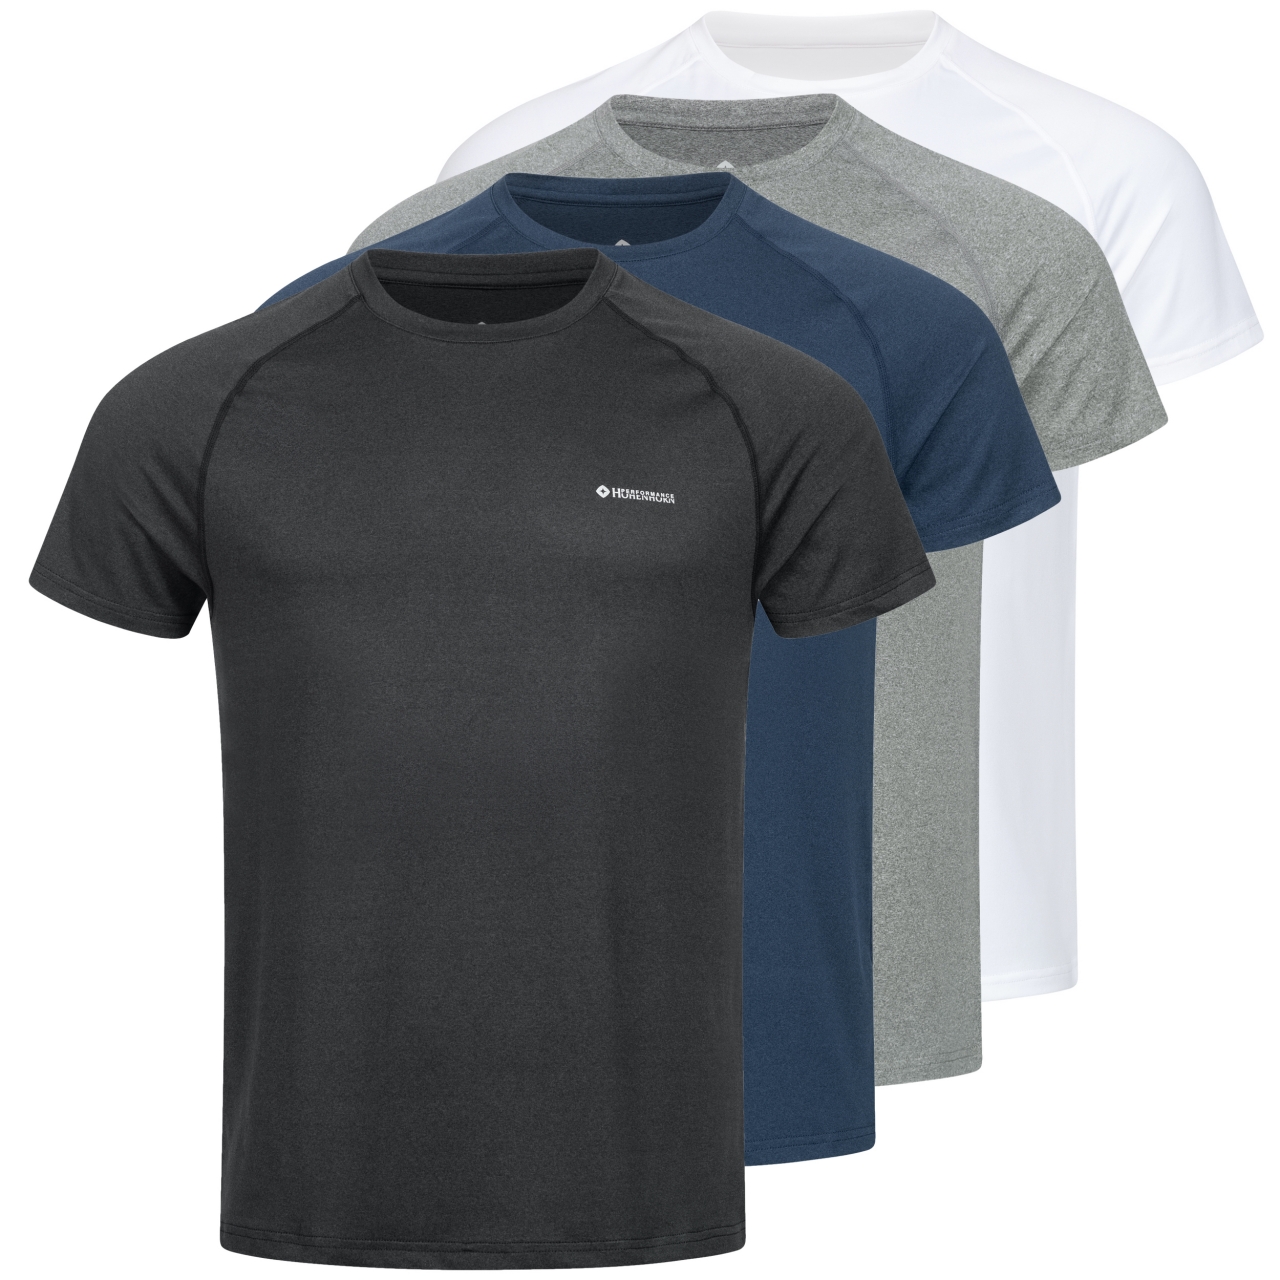 Höhenhorn Kannin Herren T-Shirt Laufshirt Fitness aus Recyceltem Material XL Dunkelgrau von Höhenhorn